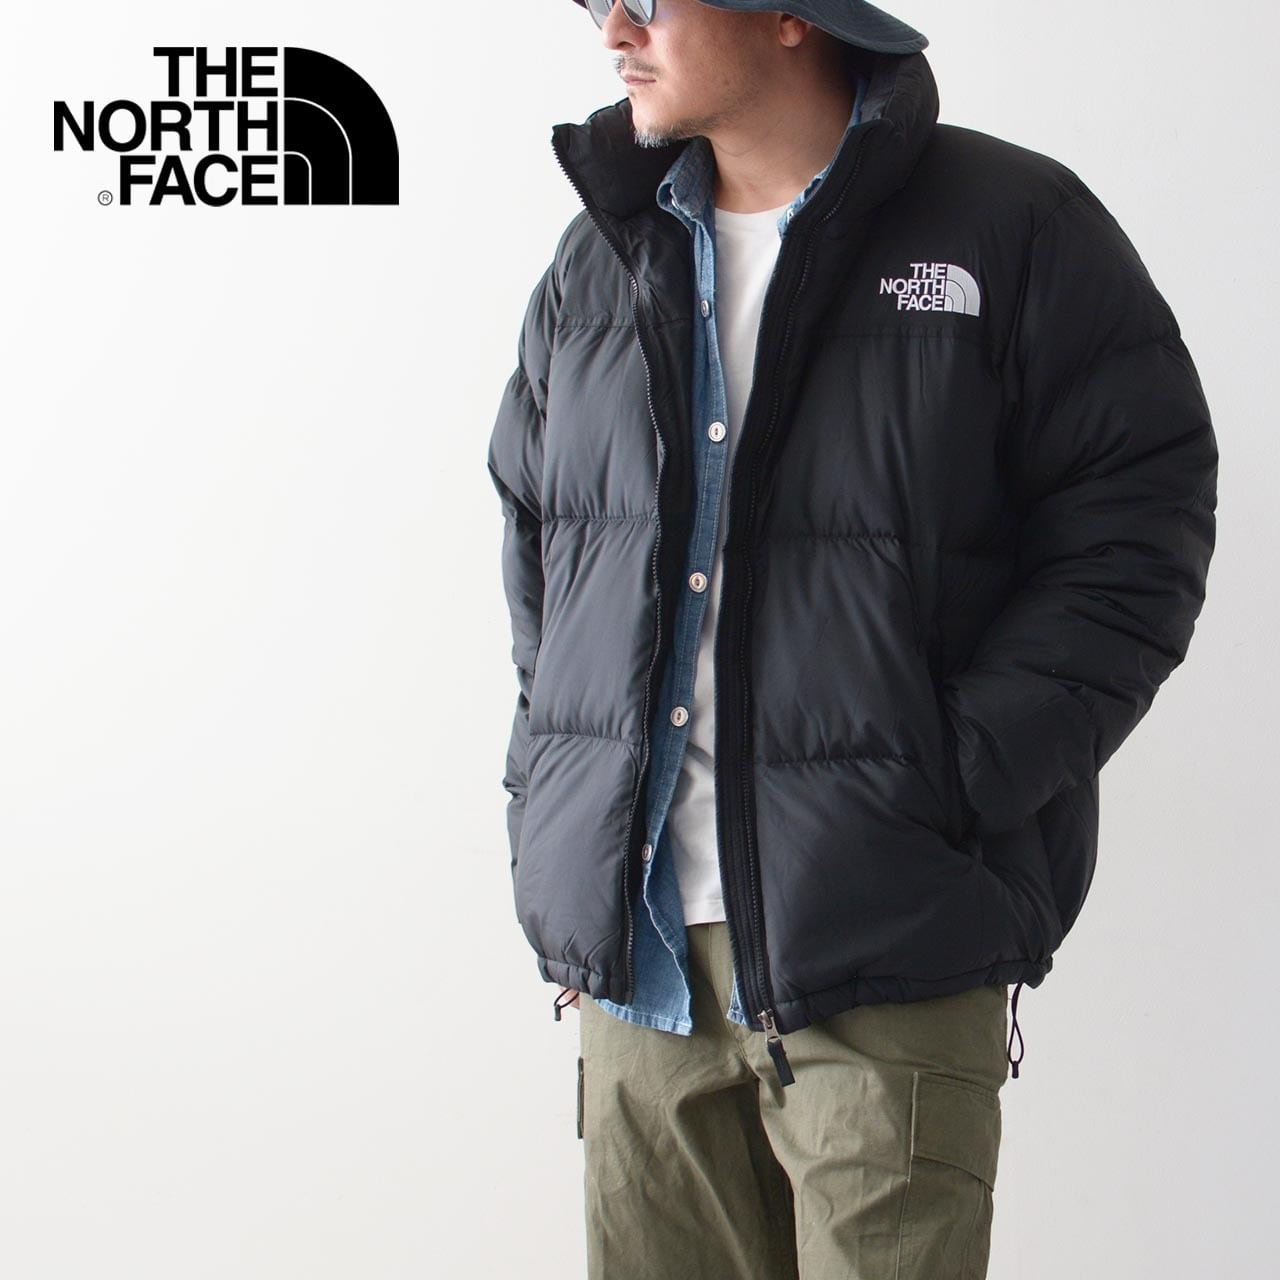 THE NORTH FACE [ザ・ノース・フェイス正規代理店] Nuptse Jacket